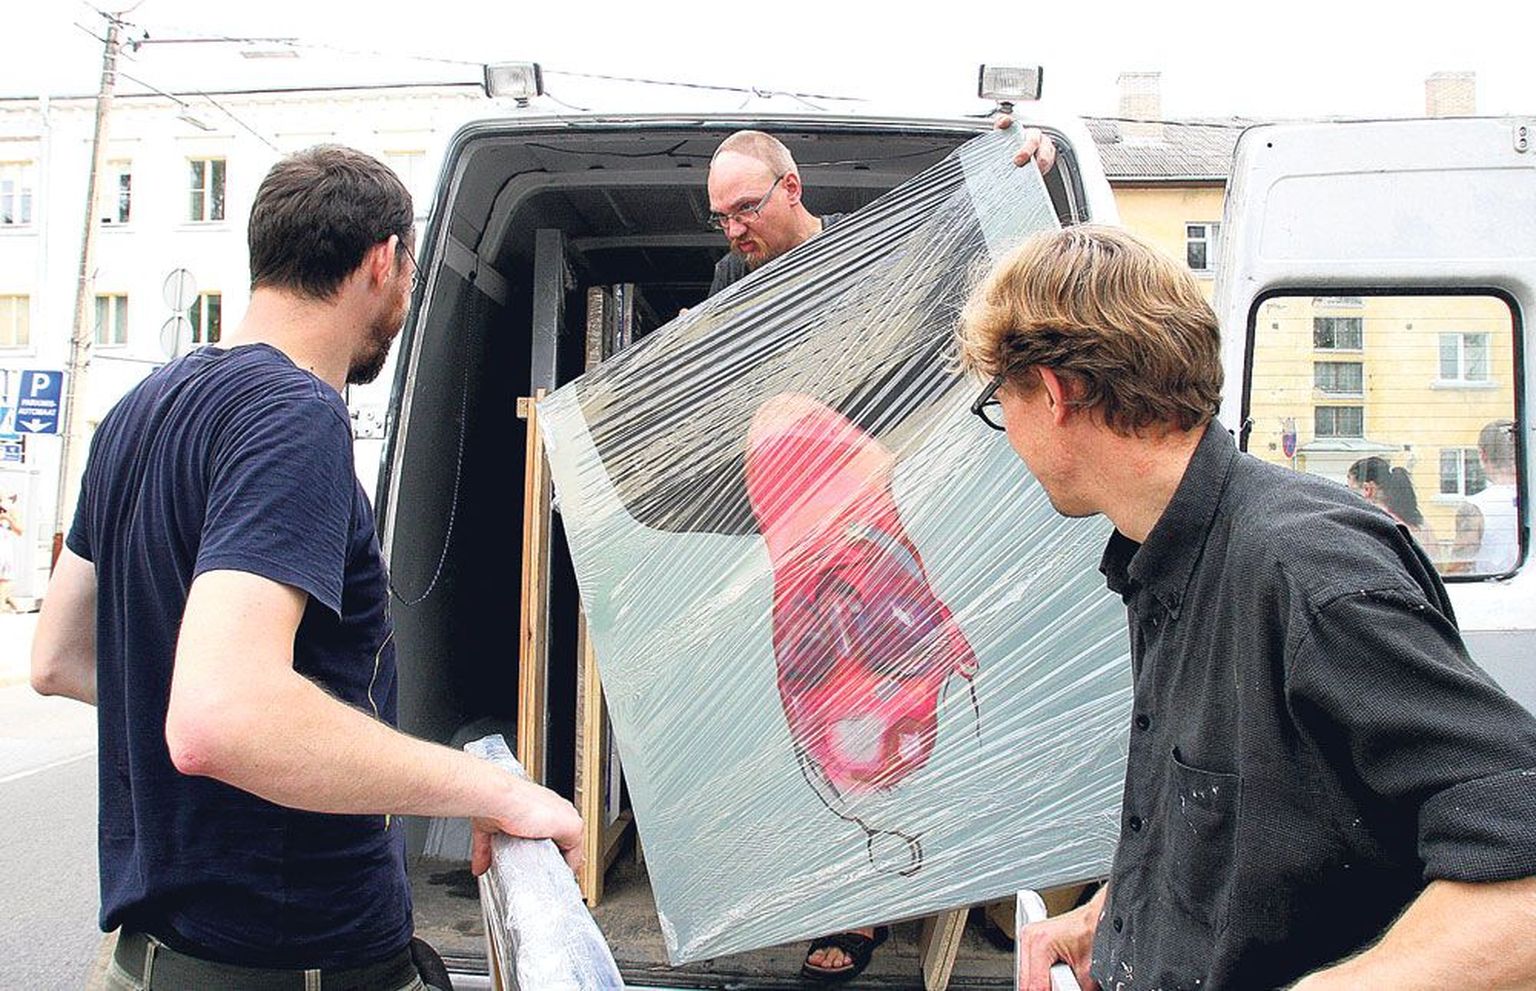 Suuri ja väikseid maale ning teisi kunstiteoseid aitasid Tallinna sõitva masina peale laadida näituse kuraator Peeter Talvistu (vasakult), kunstnik Peeter Krosmann ja Tartu kunstnike liidu galerist Indrek Grigor.